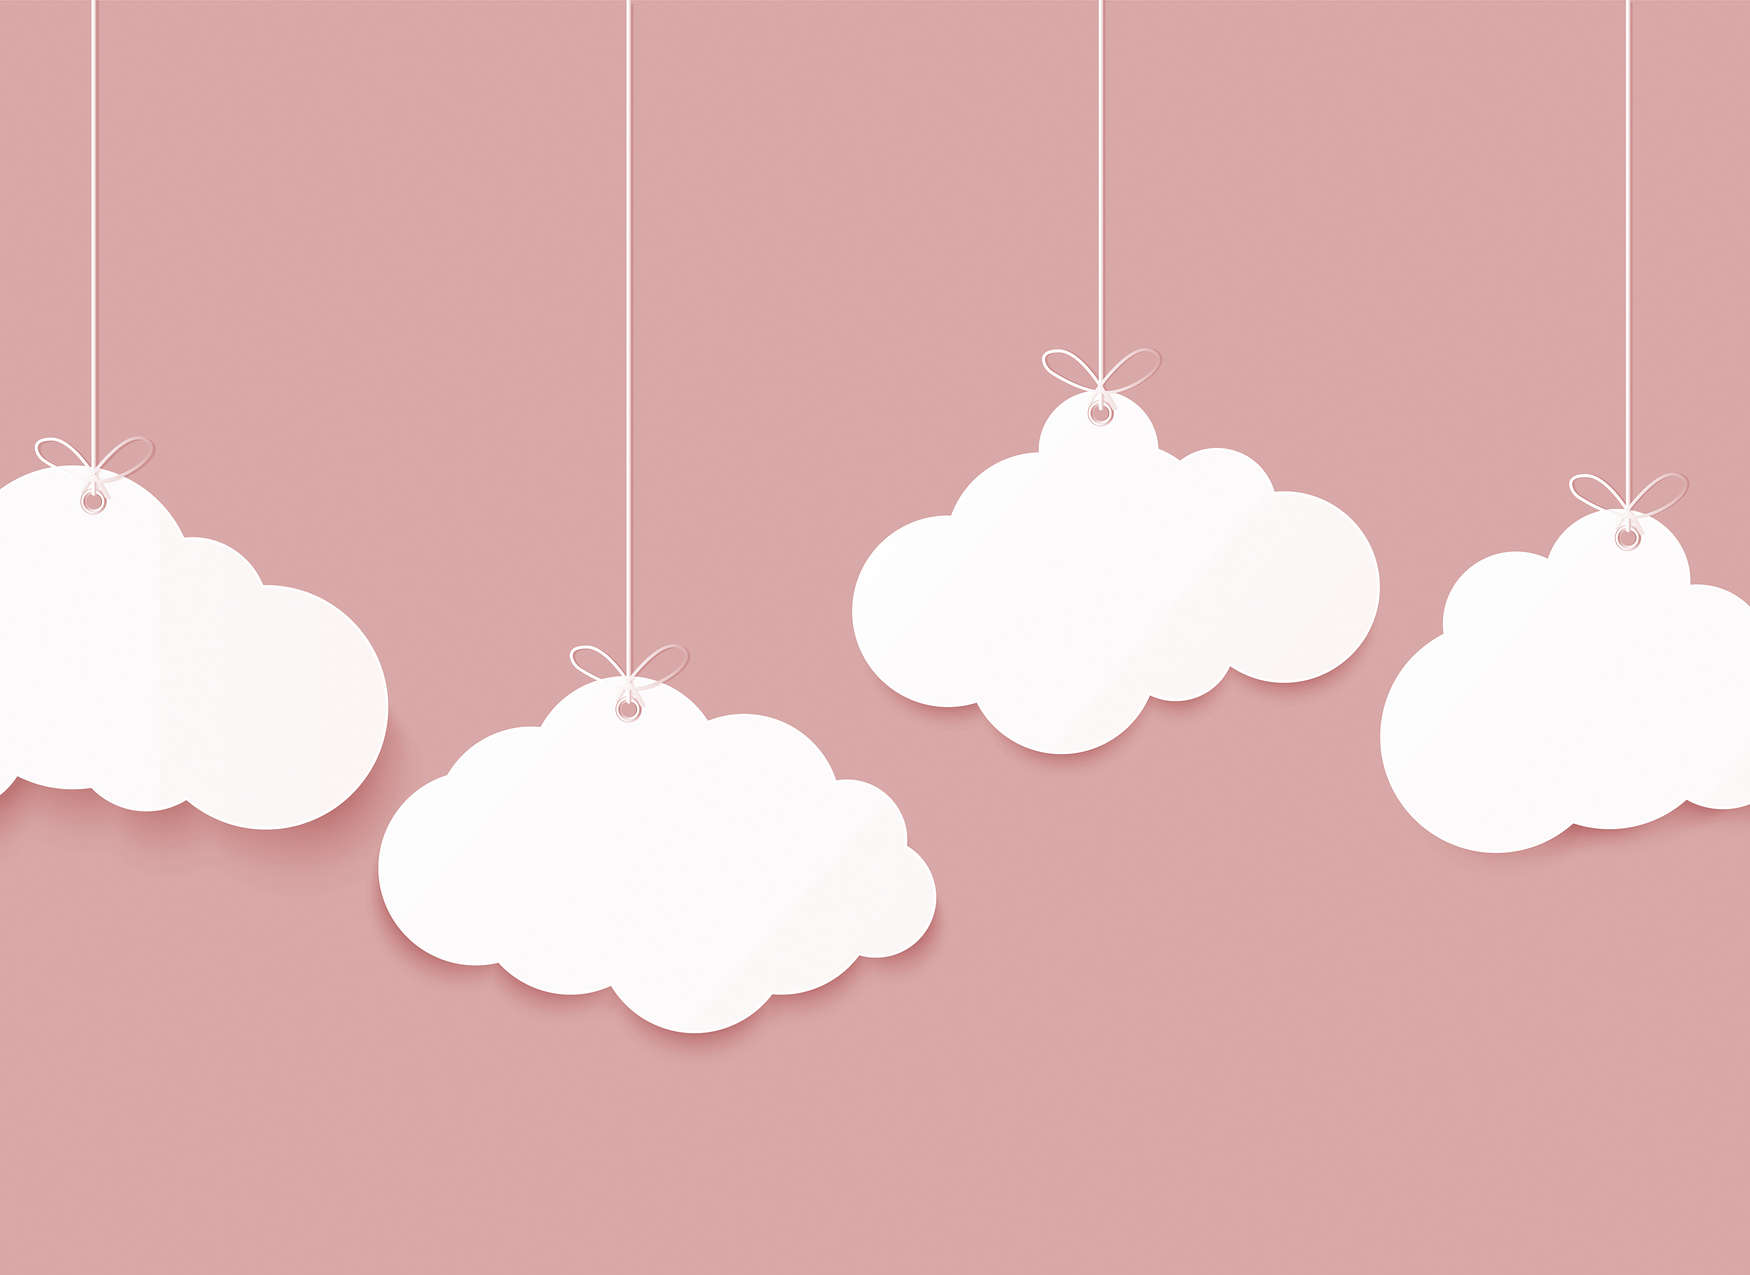             Kinderkamer Wolken Onderlaag behang - Roze, Wit
        